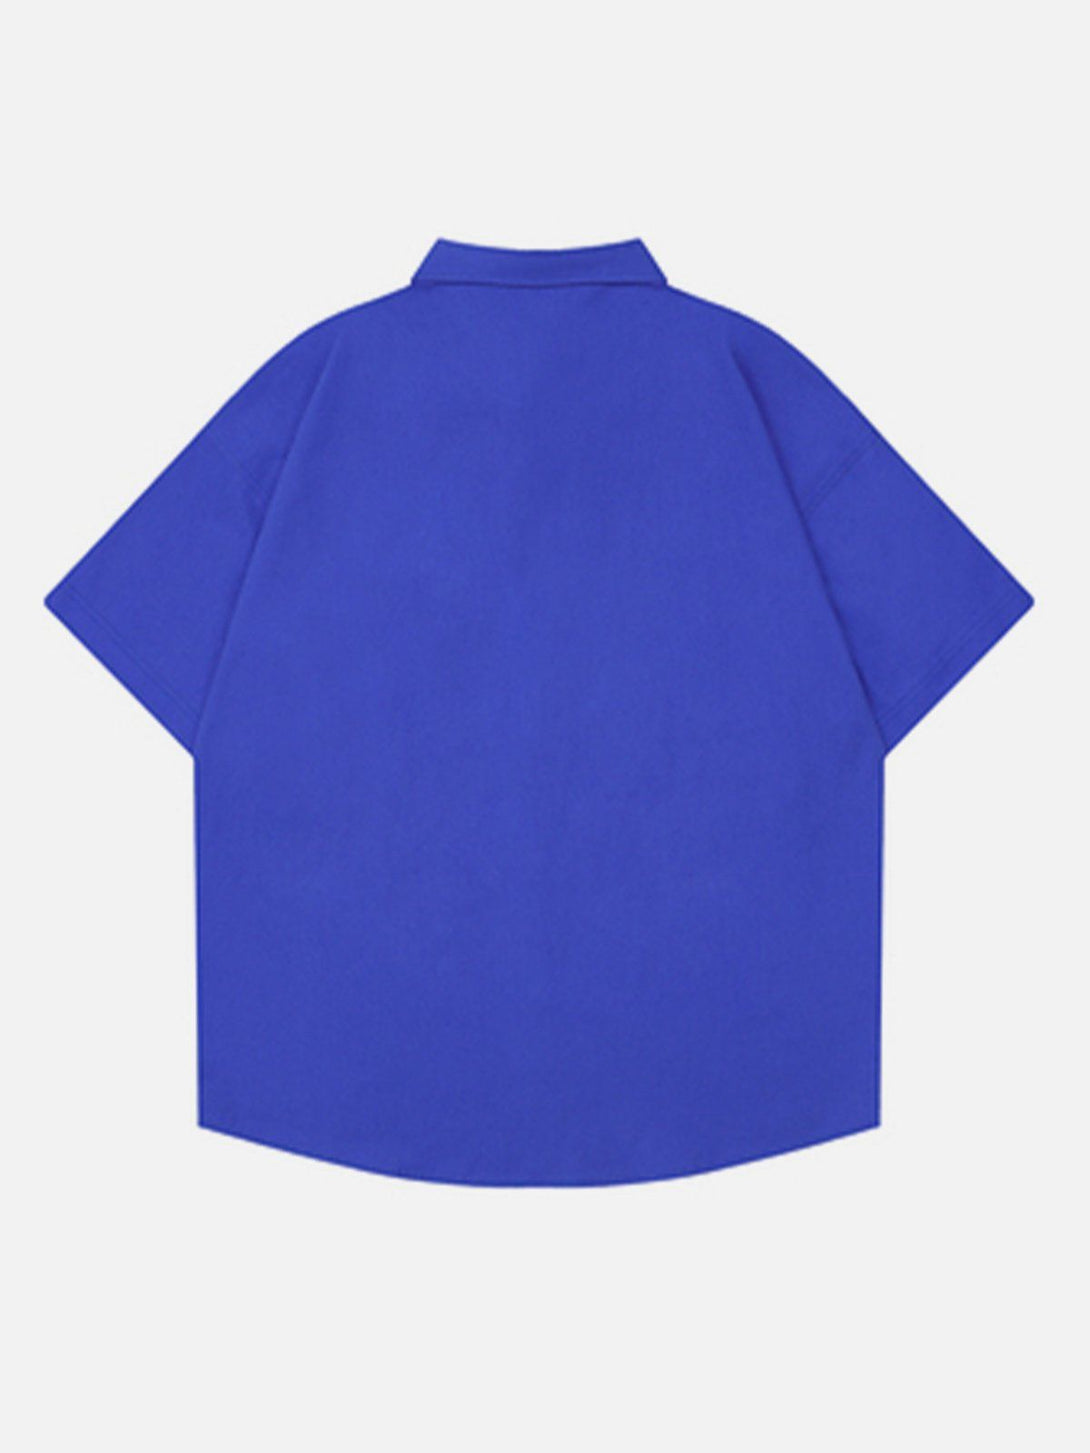 AlanBalen® - "Shirt On Shirt" Short Sleeve Shirt AlanBalen